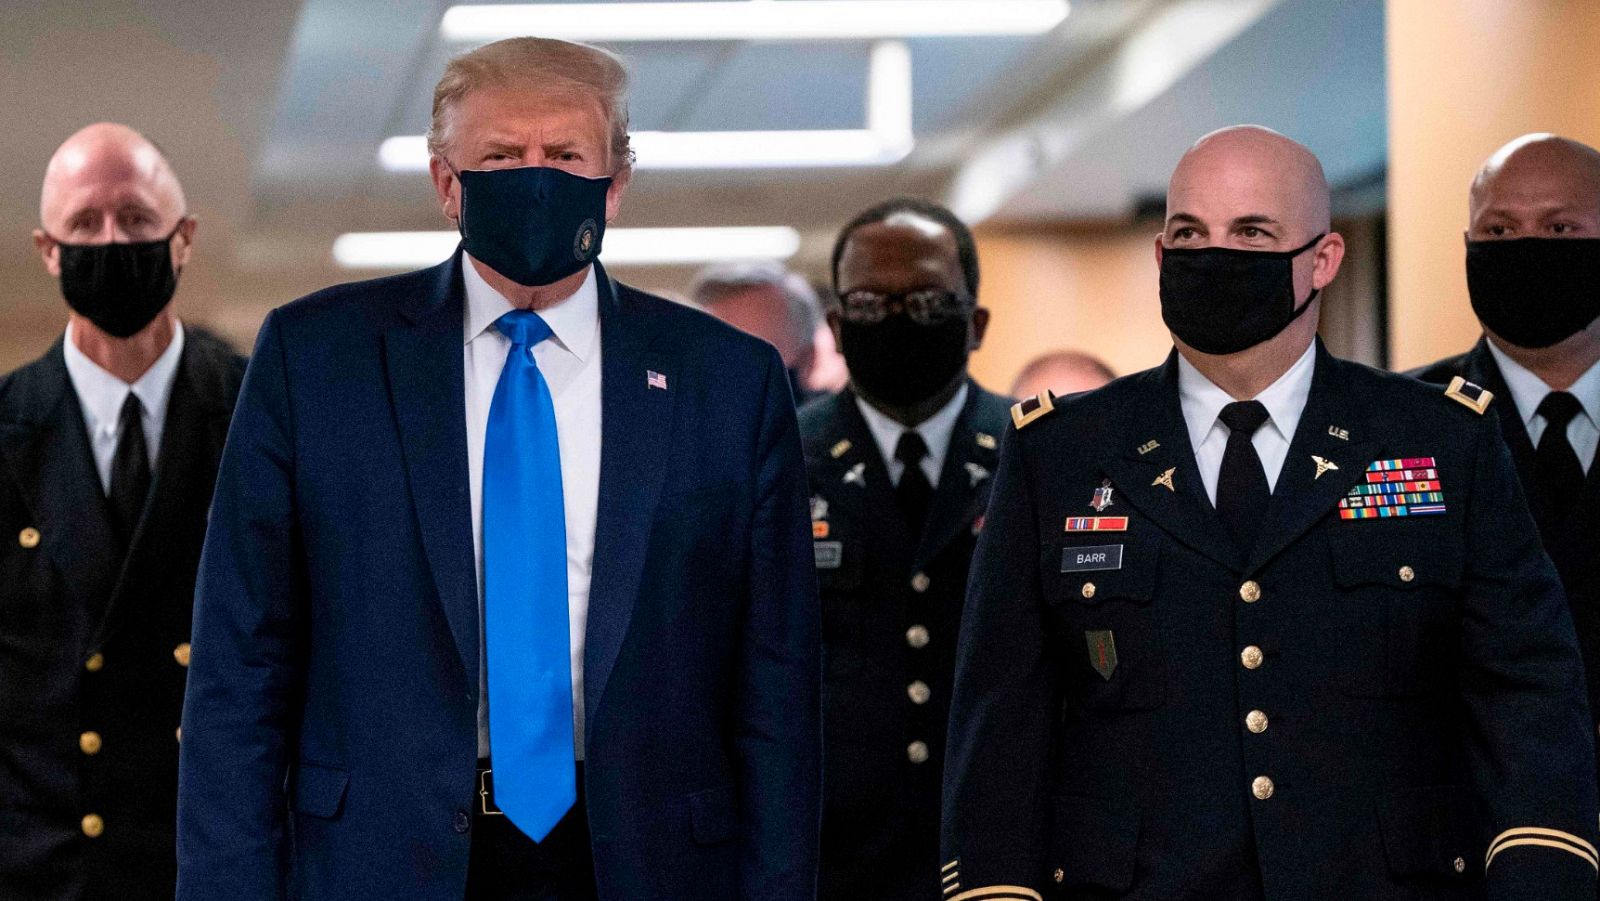 Donald Trump aparece por primera vez en público llevando mascarilla